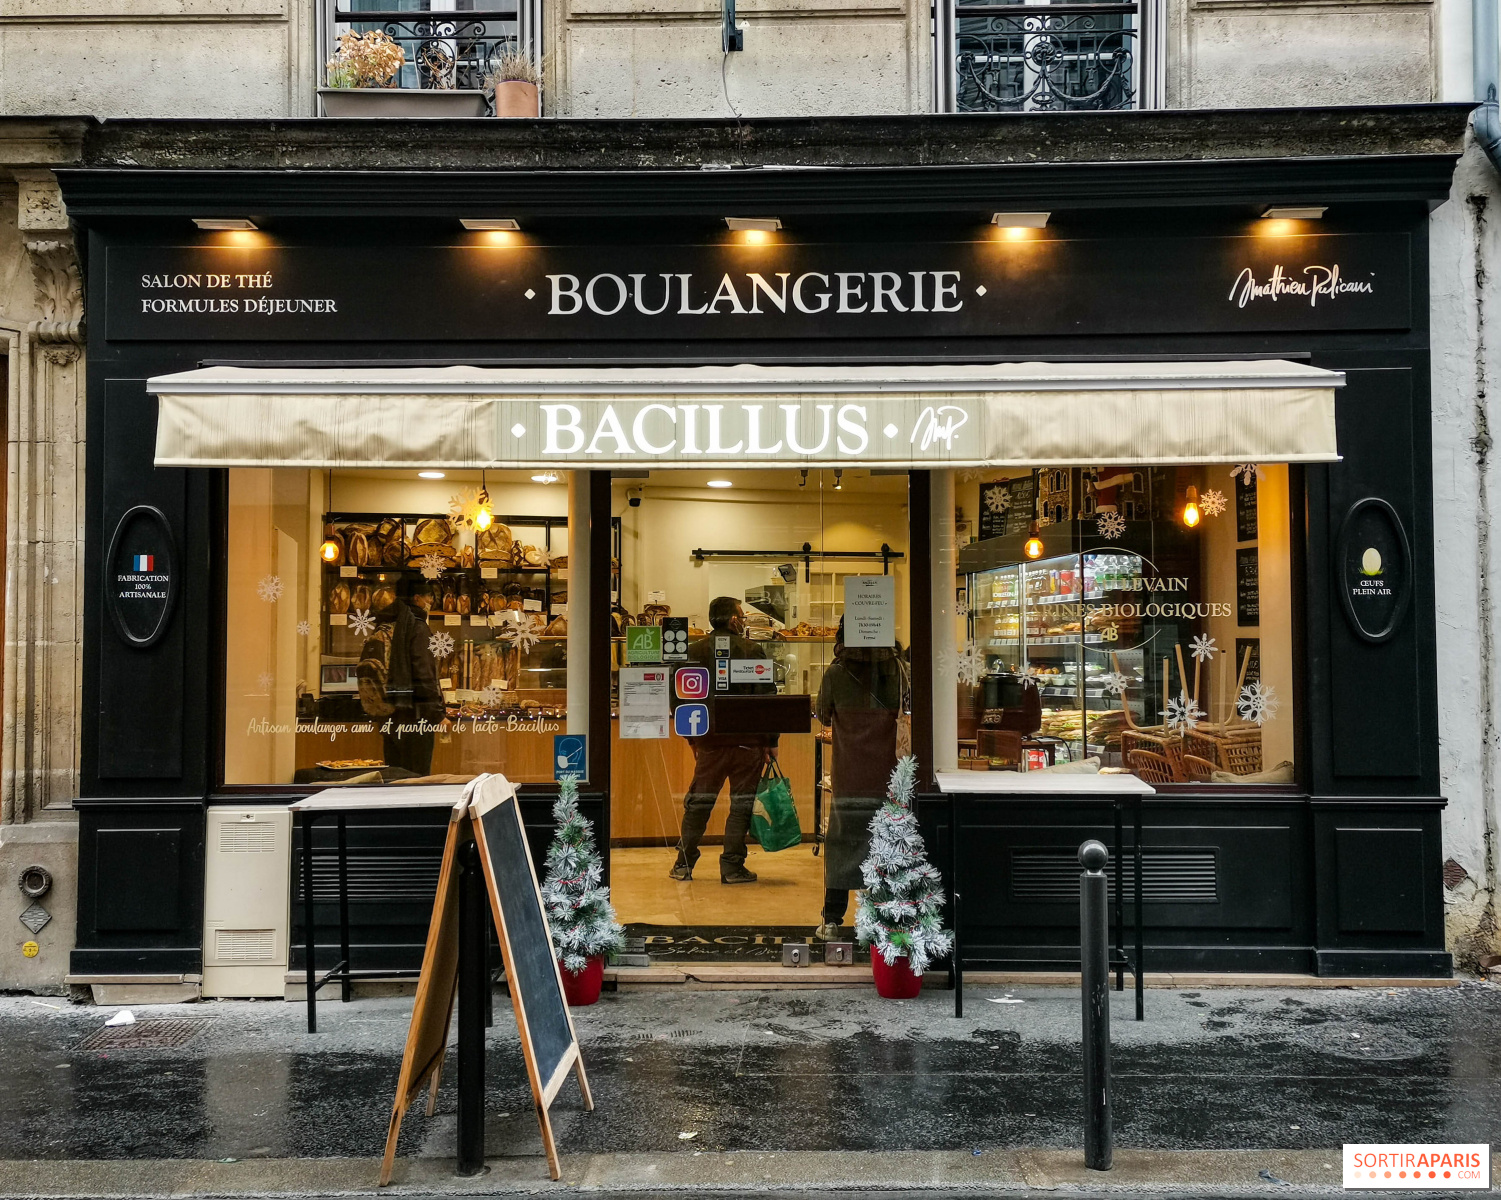 la boulangerie bacillus du 17eme arrondissement finaliste de la meilleure boulangerie de france sortiraparis com